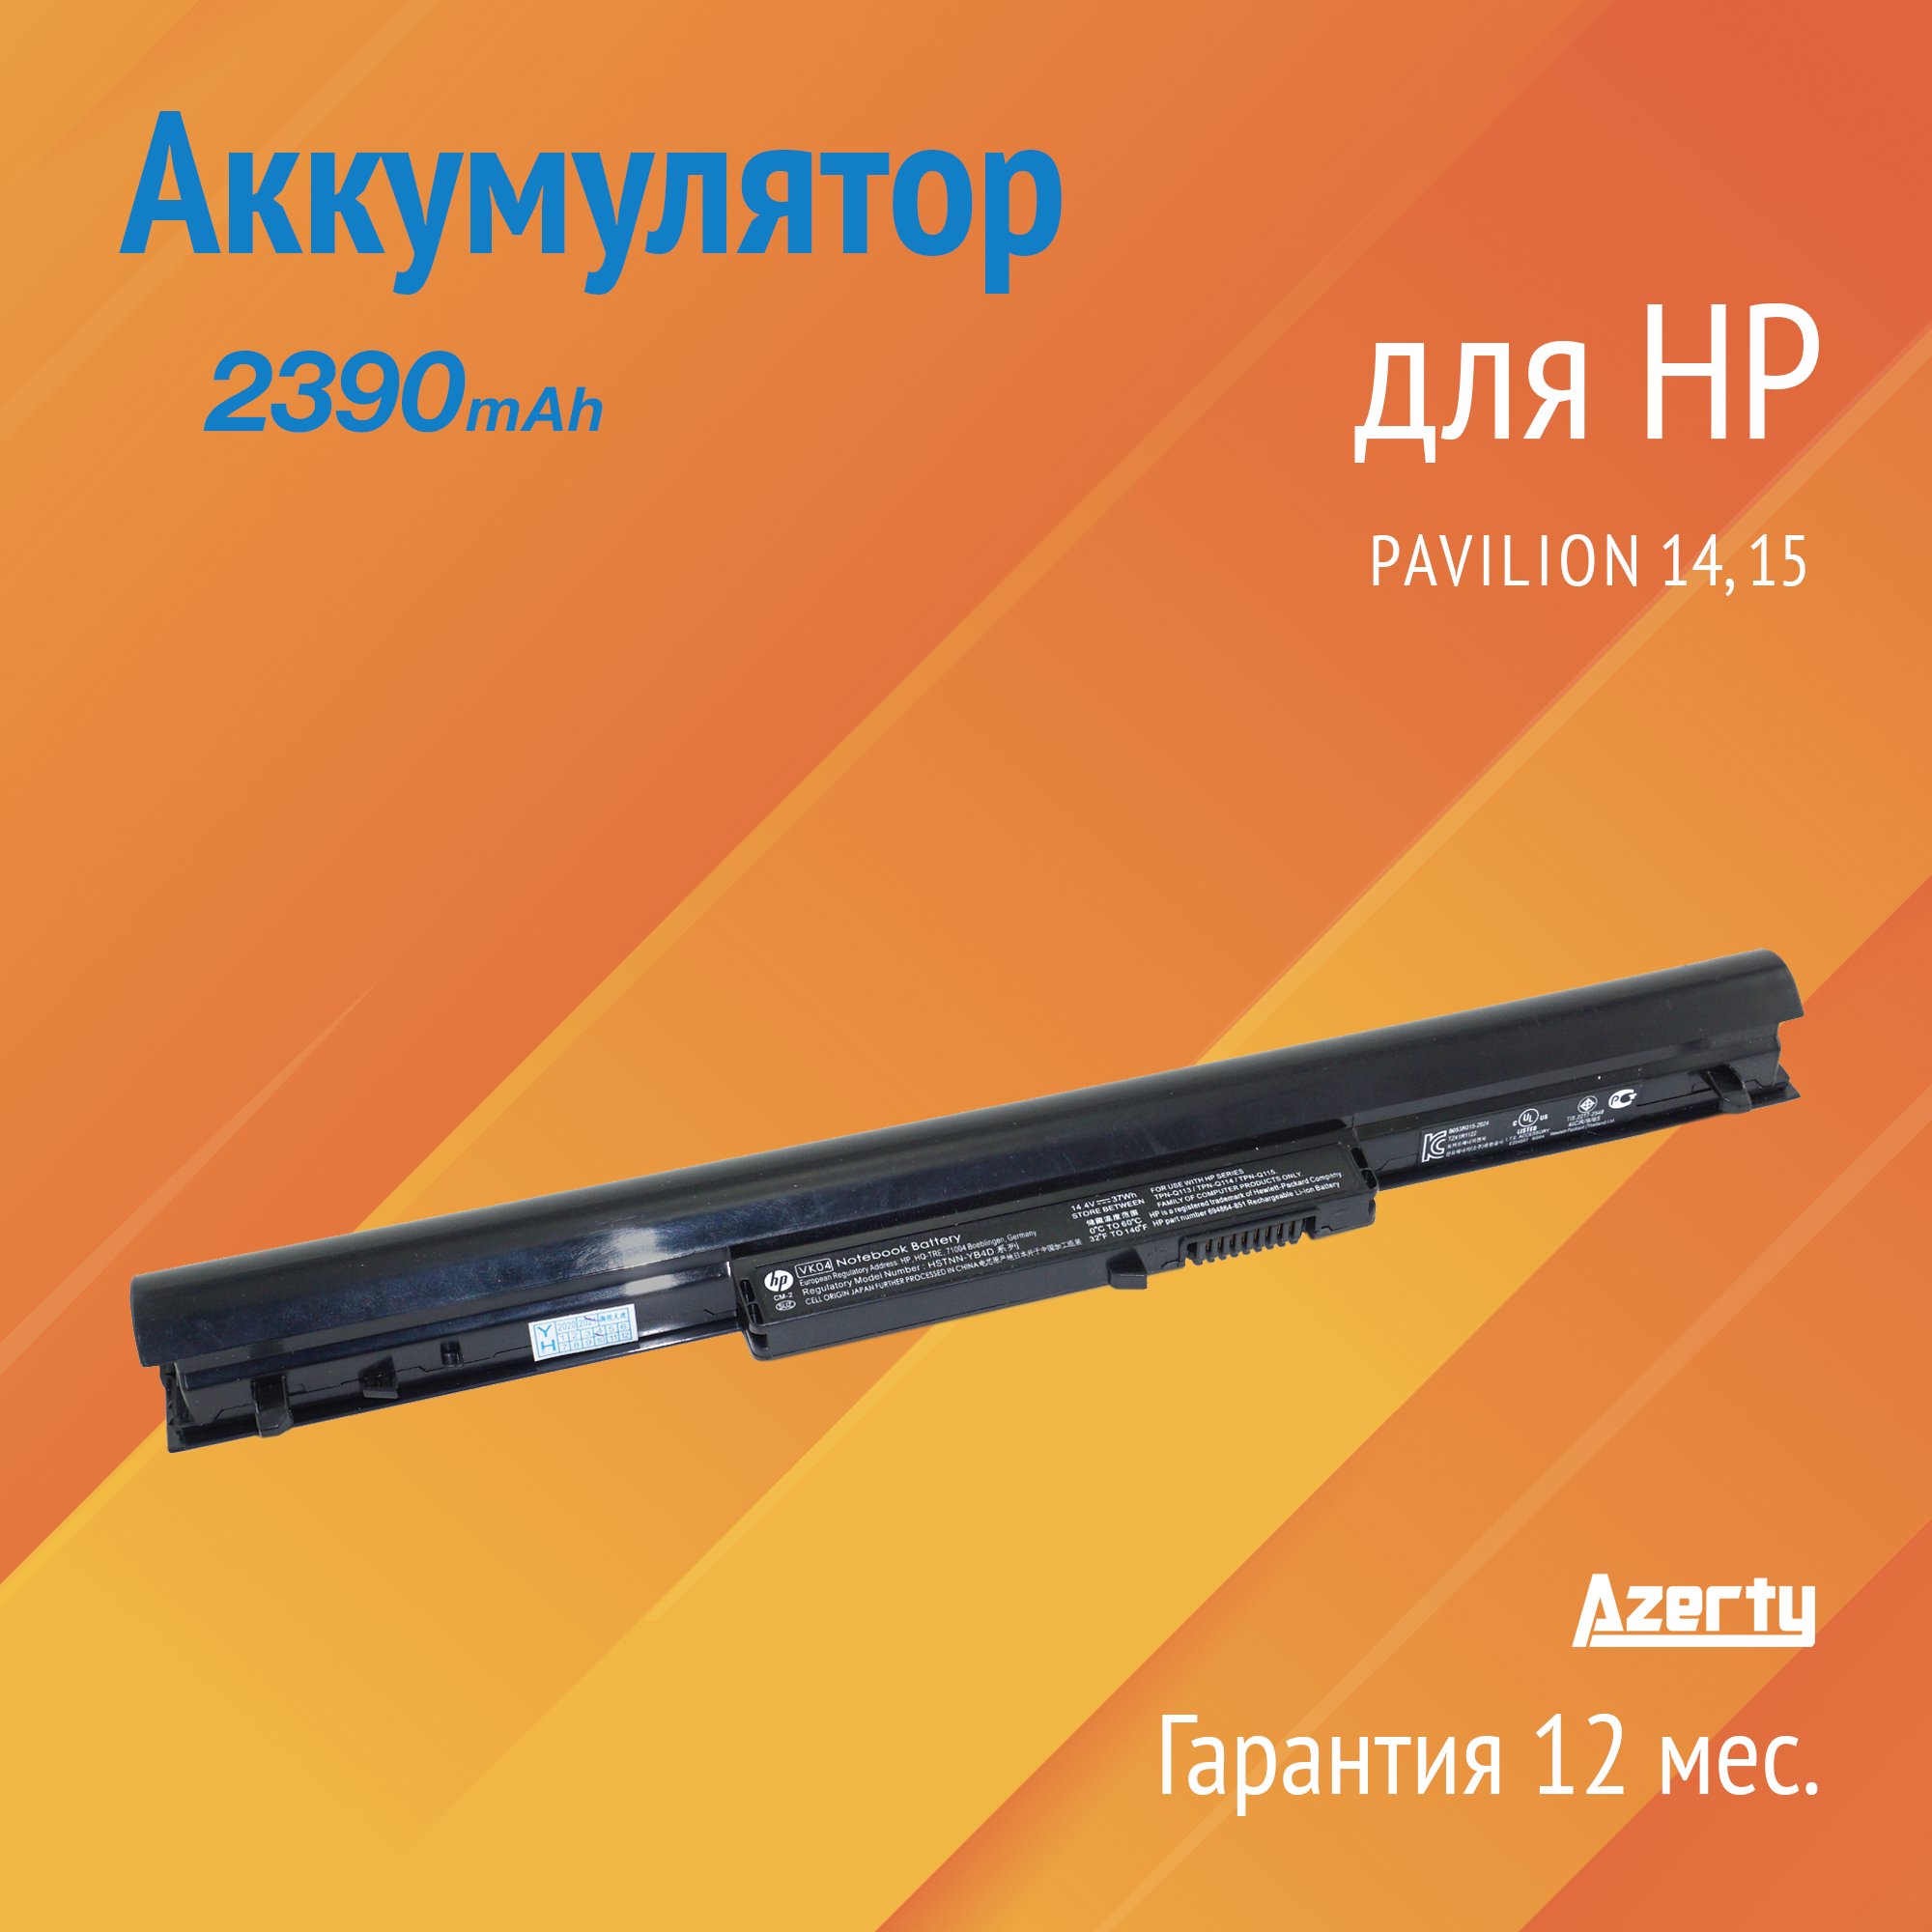 Аккумулятор HSTNN-YB4D для HP Pavilion 14 / 15 (694864-851 VK04 CL2106B.806)